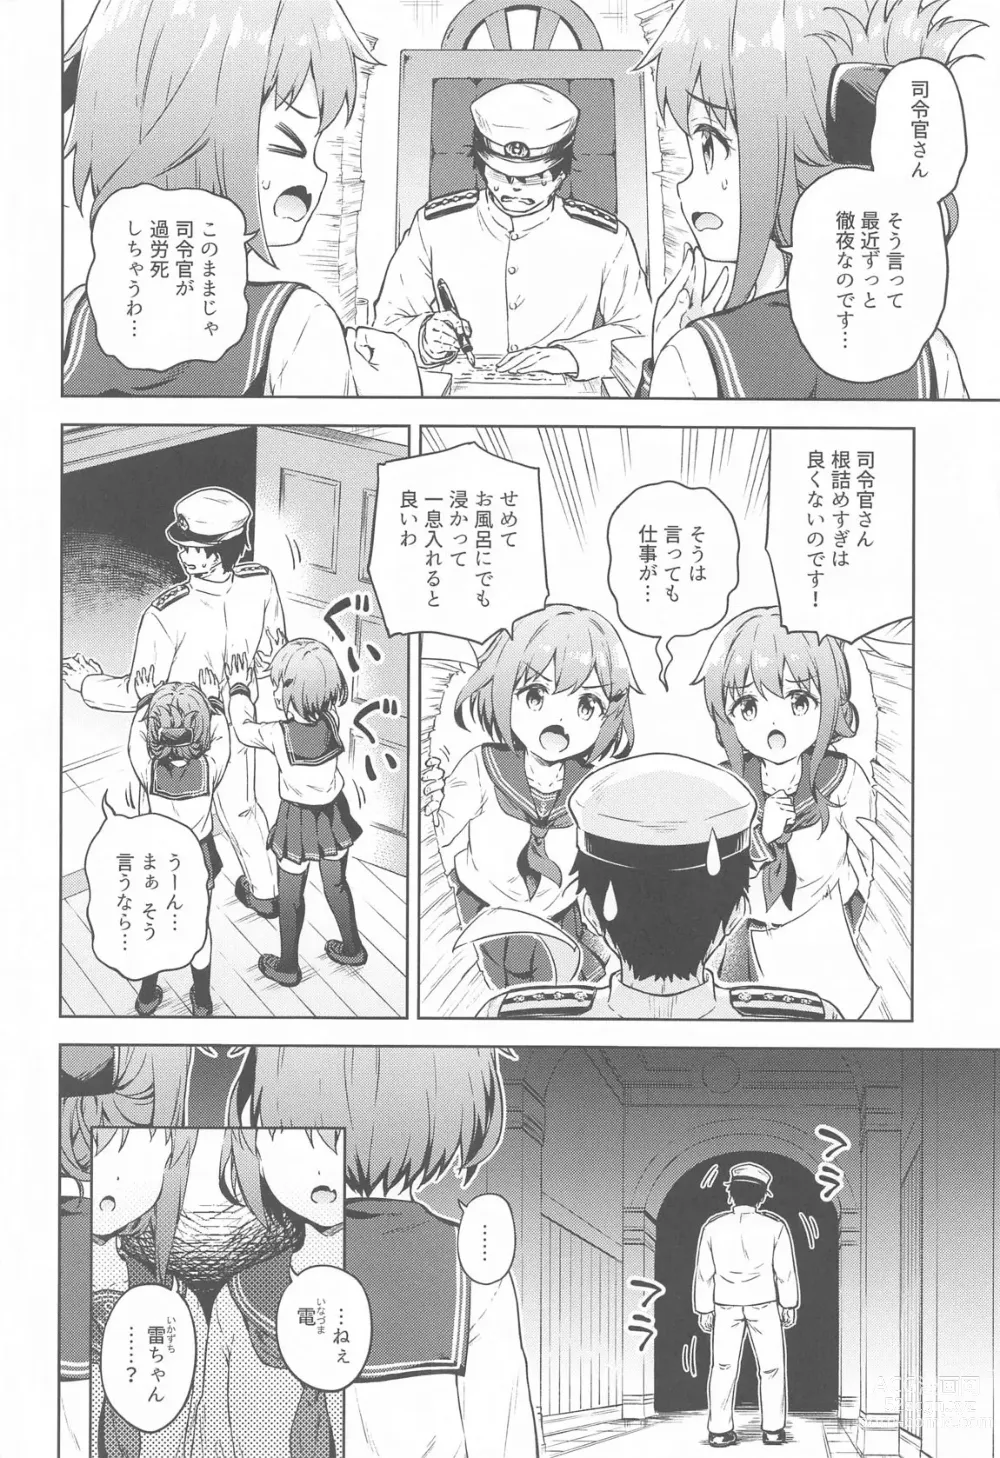 Page 3 of doujinshi Dairoku Refle Ikazuchi Inazuma Awaawa Bath Time